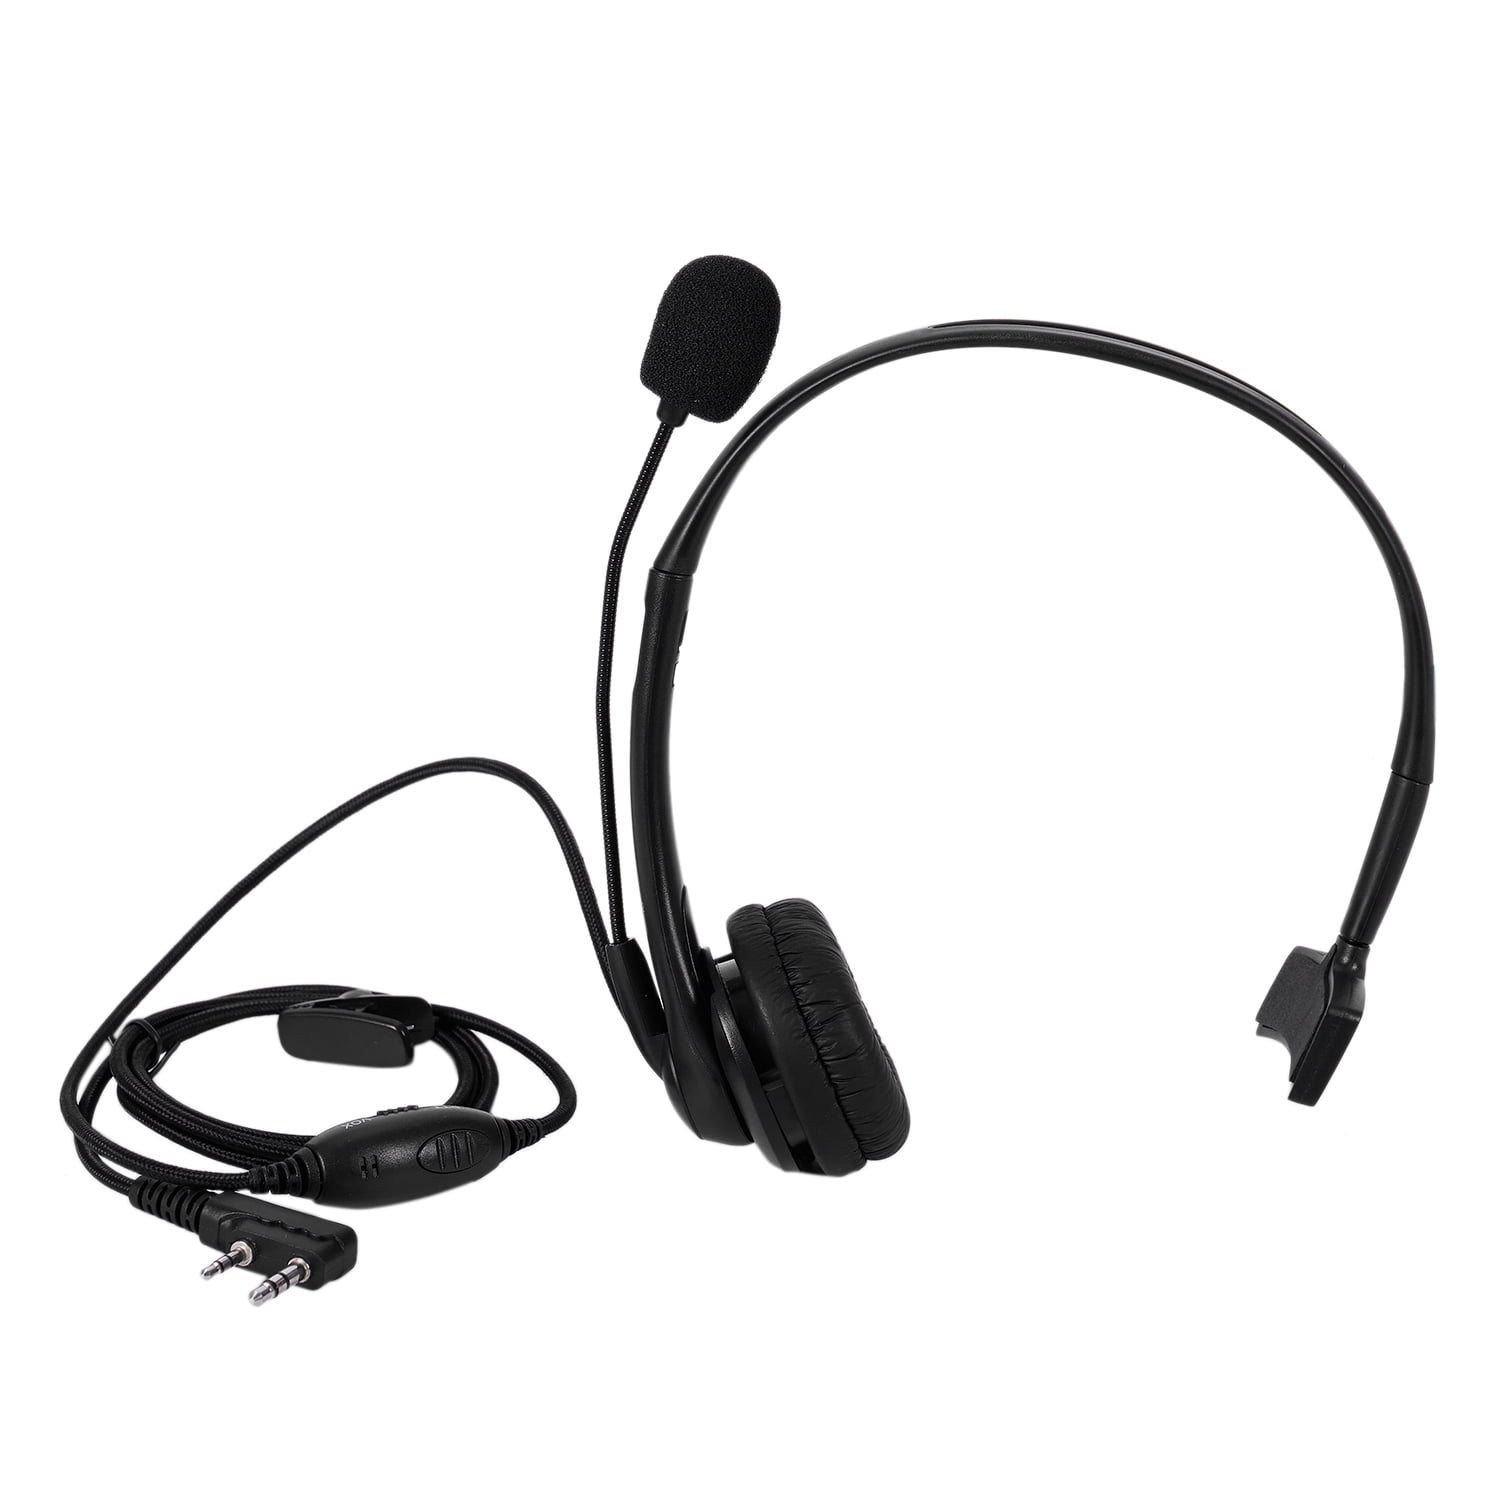 2 PIN PTT Mic Headphone Headset RETEVIS for KENWOOD RETEVIS BAOFENG UV5R 888S 